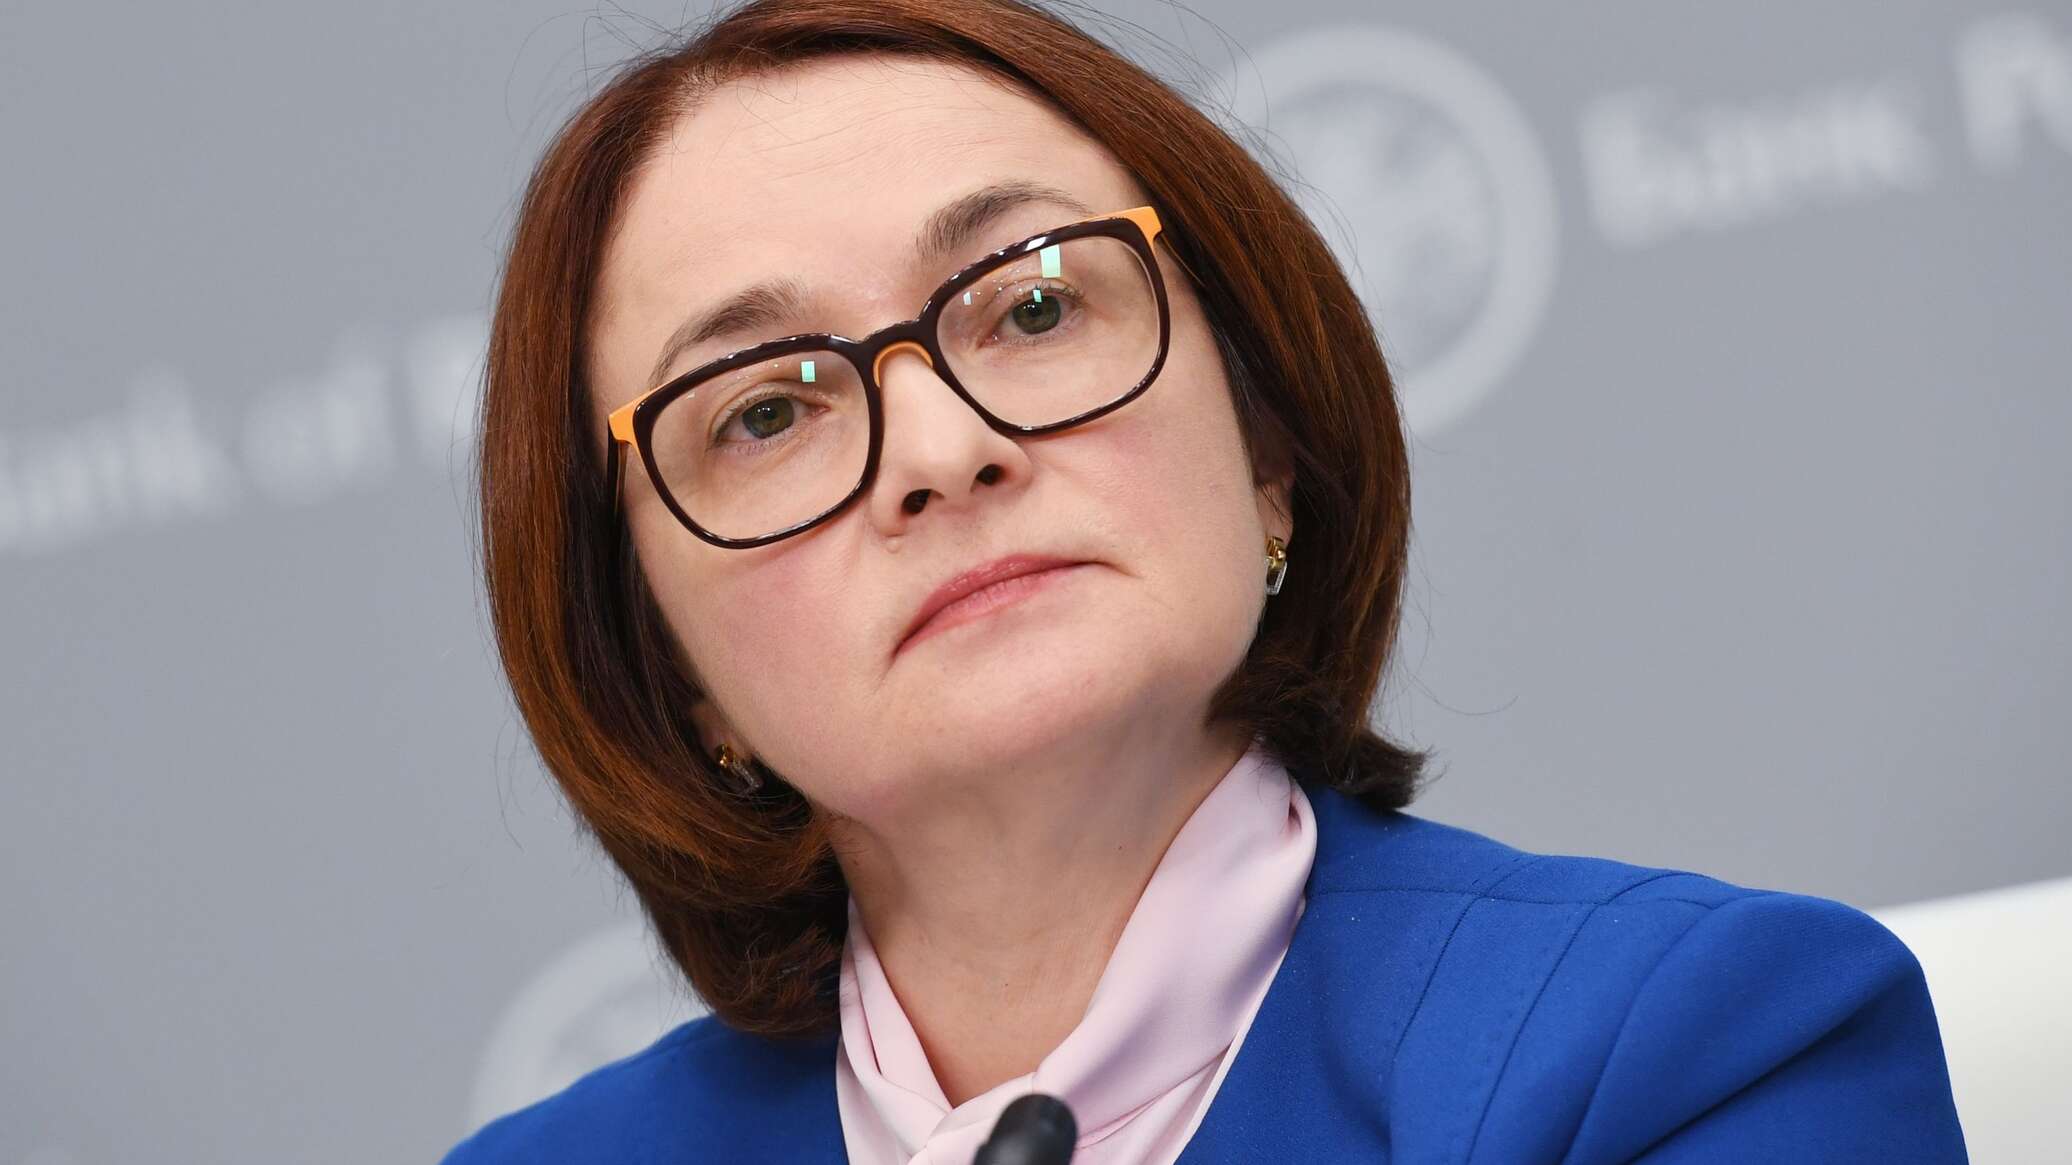 رئيسة المصرف المركزي الروسي: دول "بريكس" ستركز هذا العام على التفاعل بشأن التسويات بالعملات الوطنية